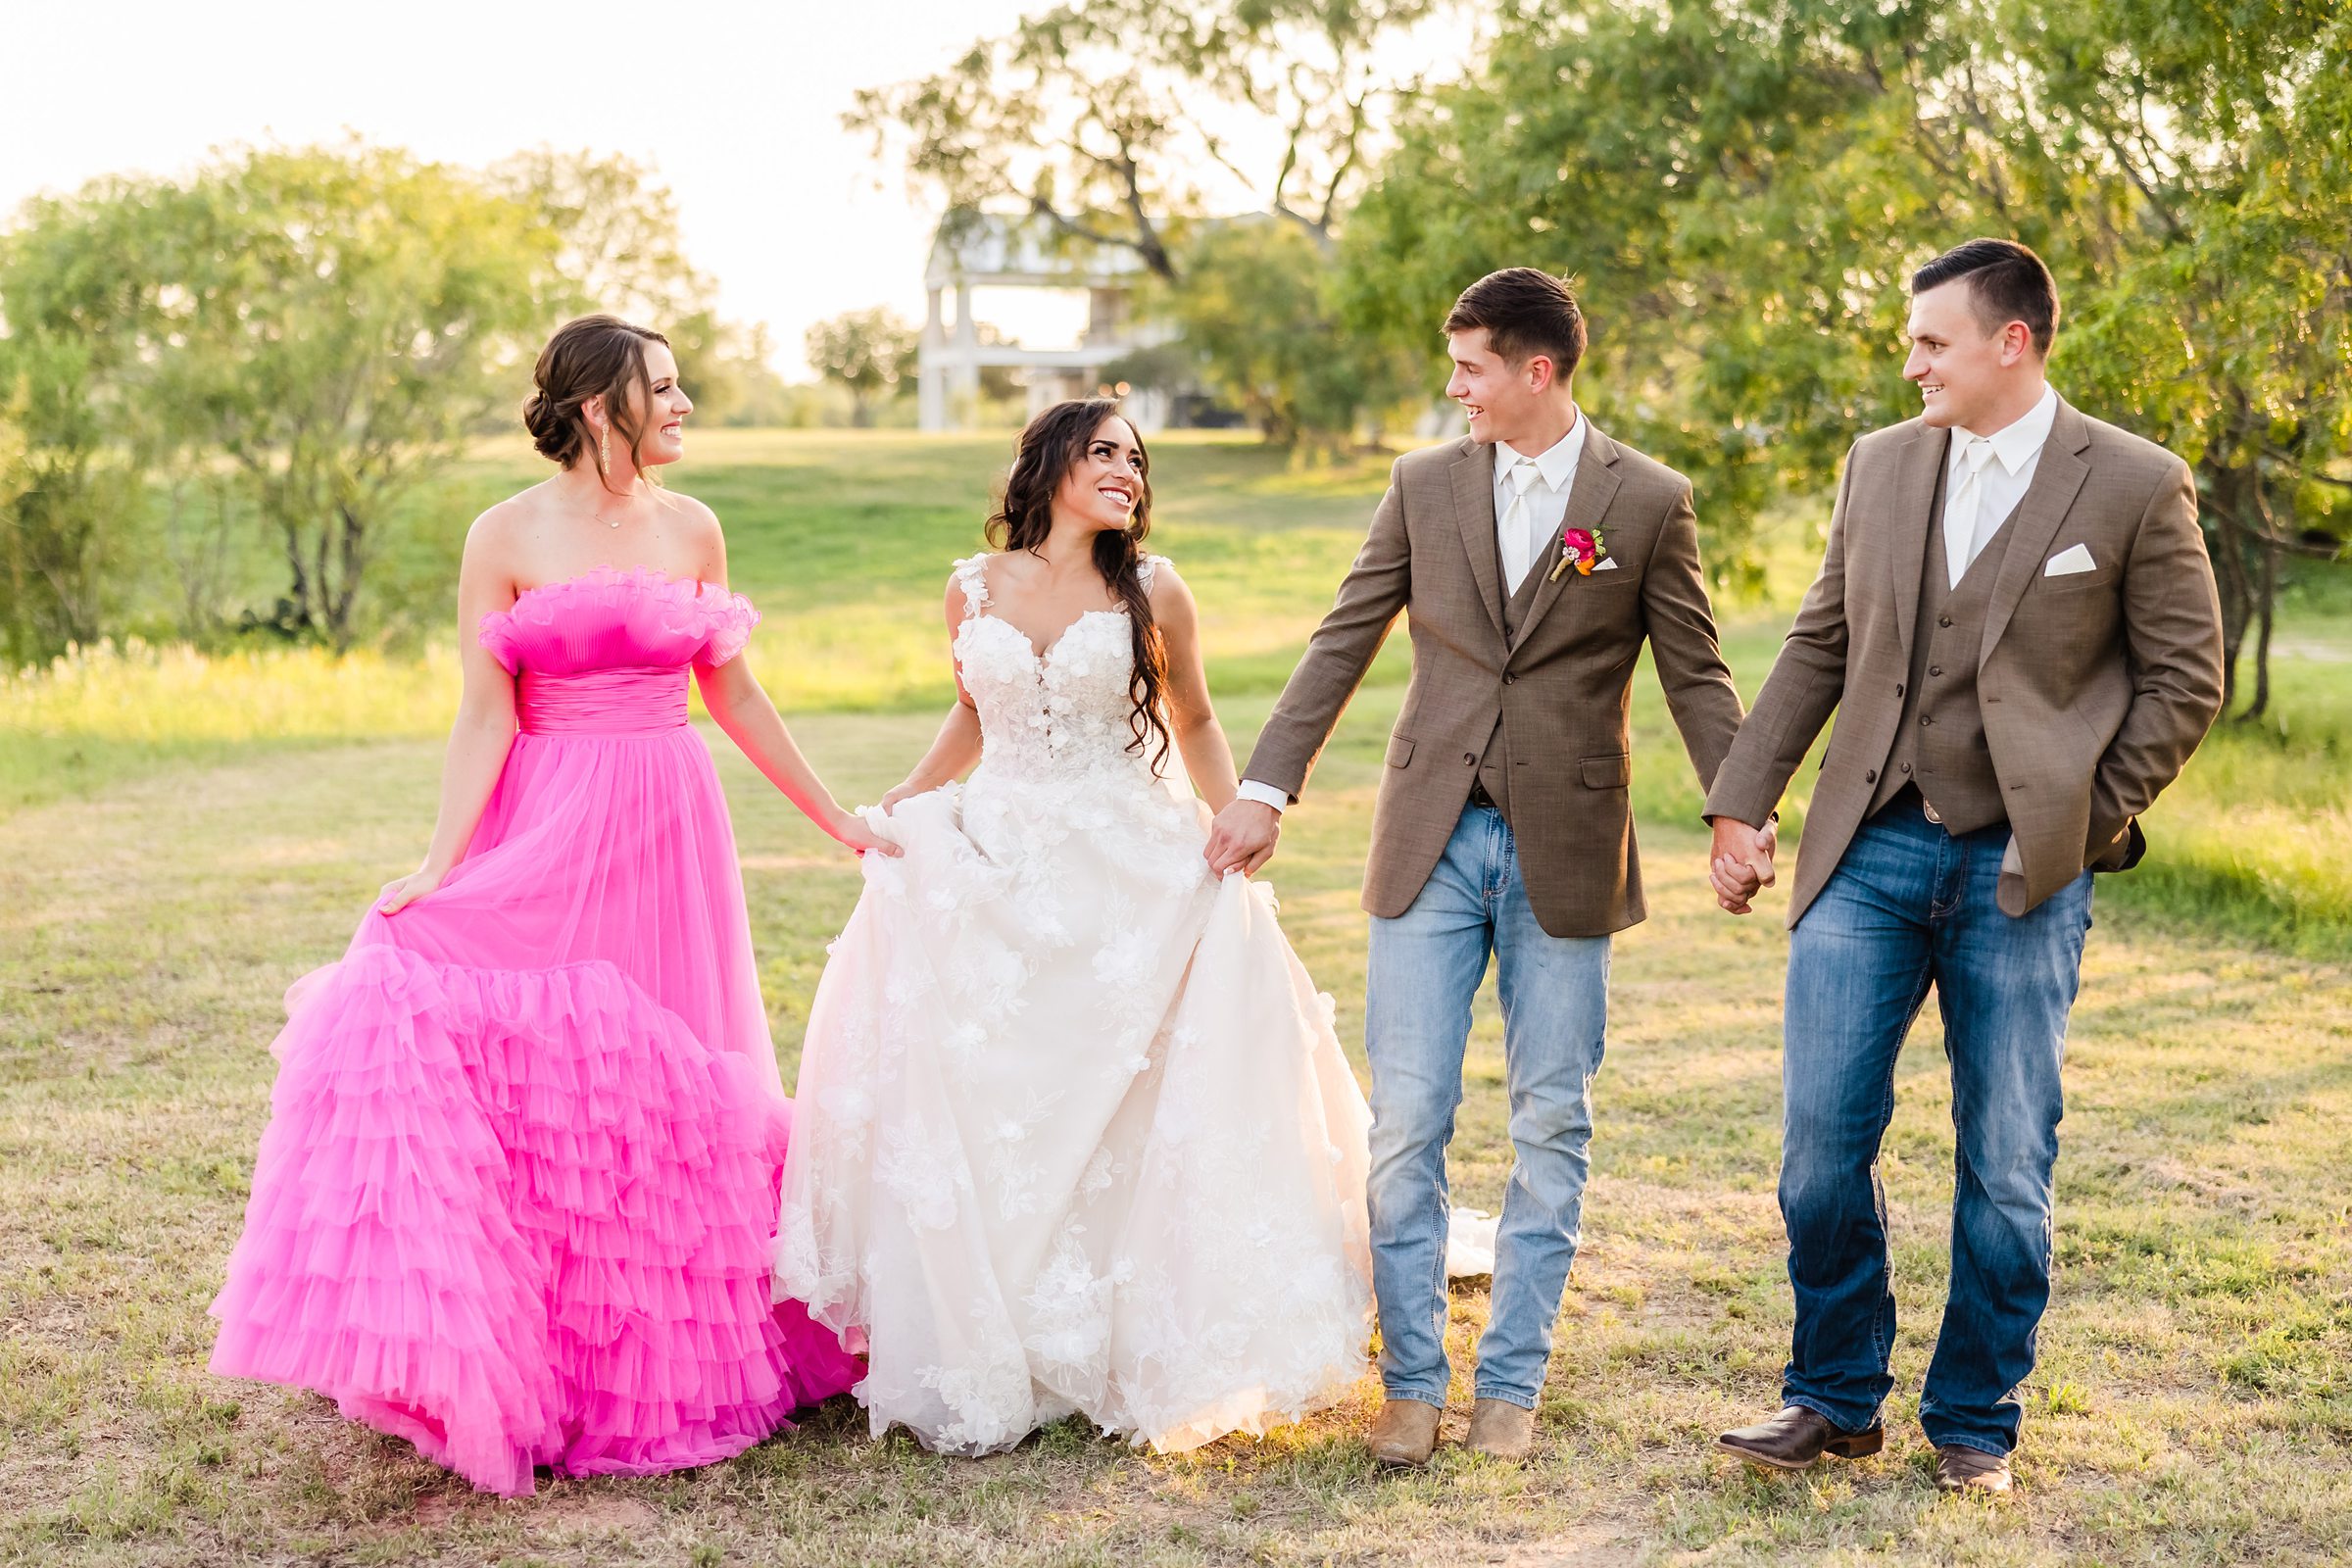 Bridal Party at the Grandview wedding venue in La Vernia, Texas.